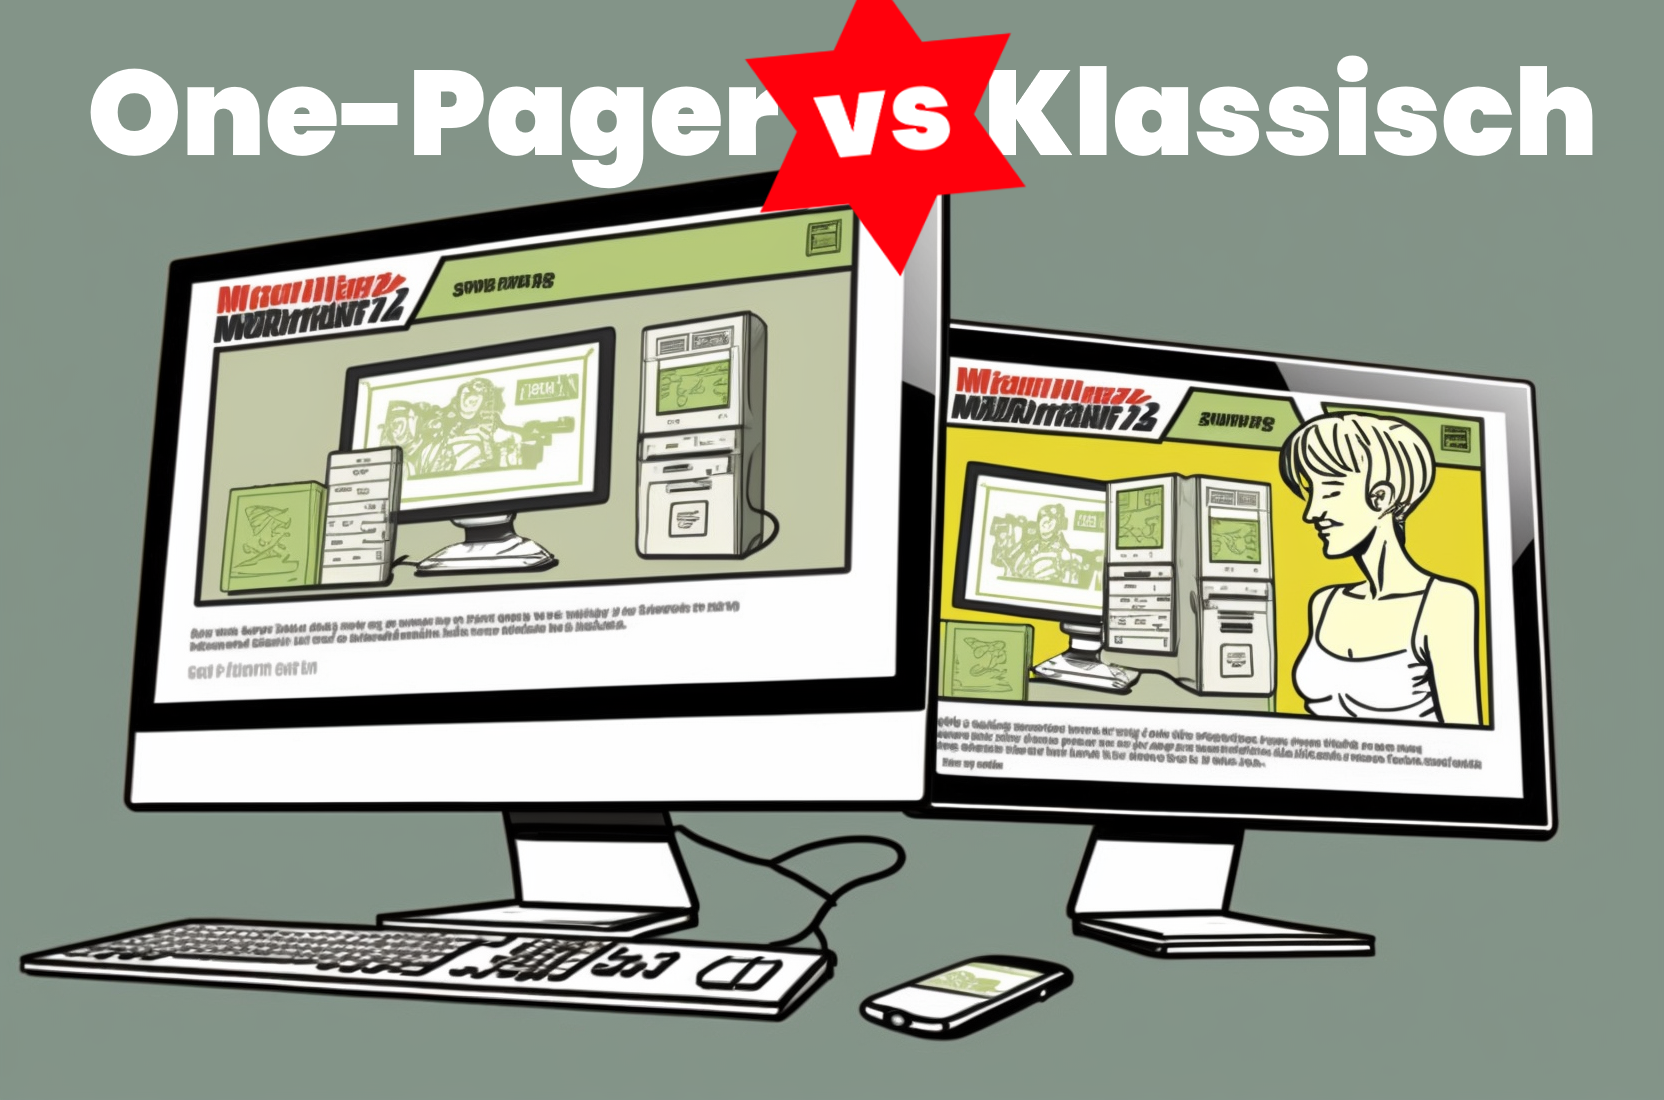 One-Pager vs Klassische WEbsite